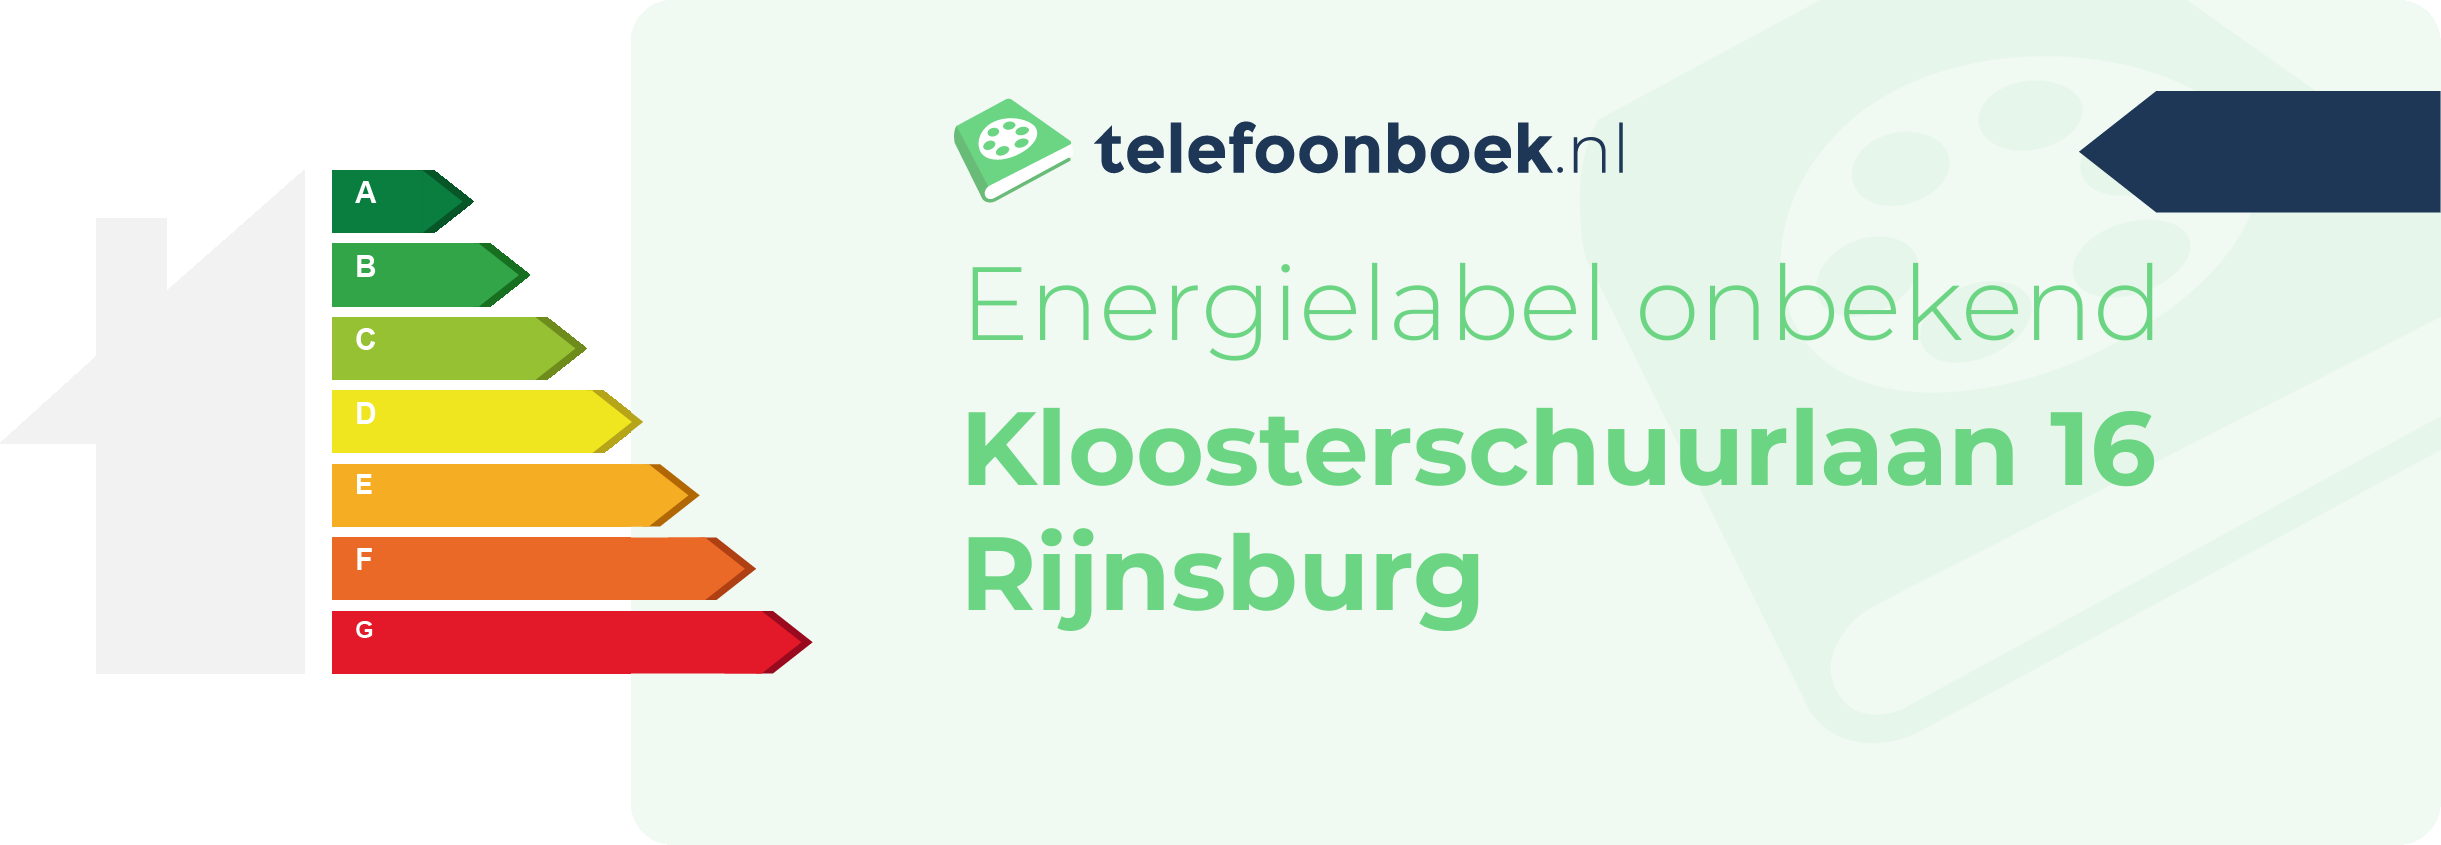 Energielabel Kloosterschuurlaan 16 Rijnsburg